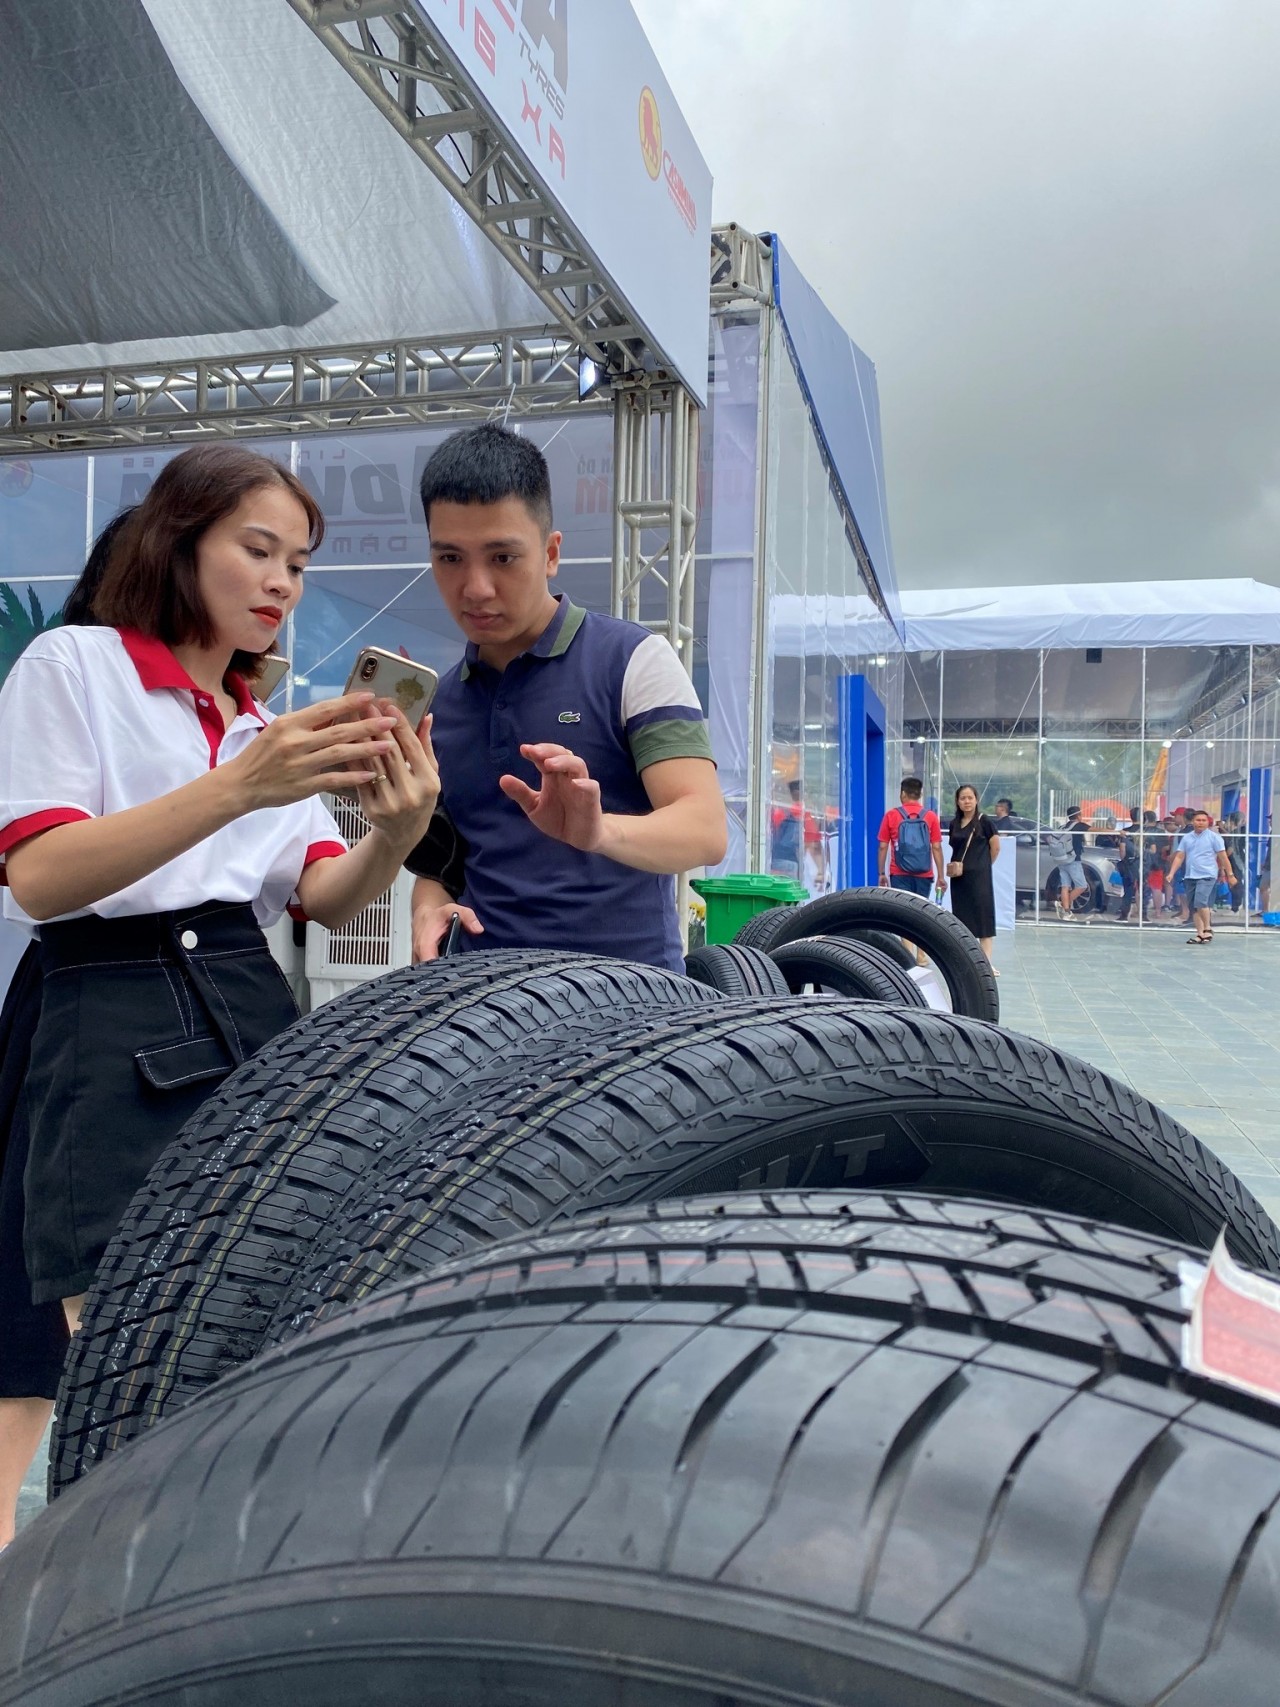 Lốp Advenza thu hút khách tham quan tại sự kiện Xếp xe kỷ lục hình bản đồ Việt Nam